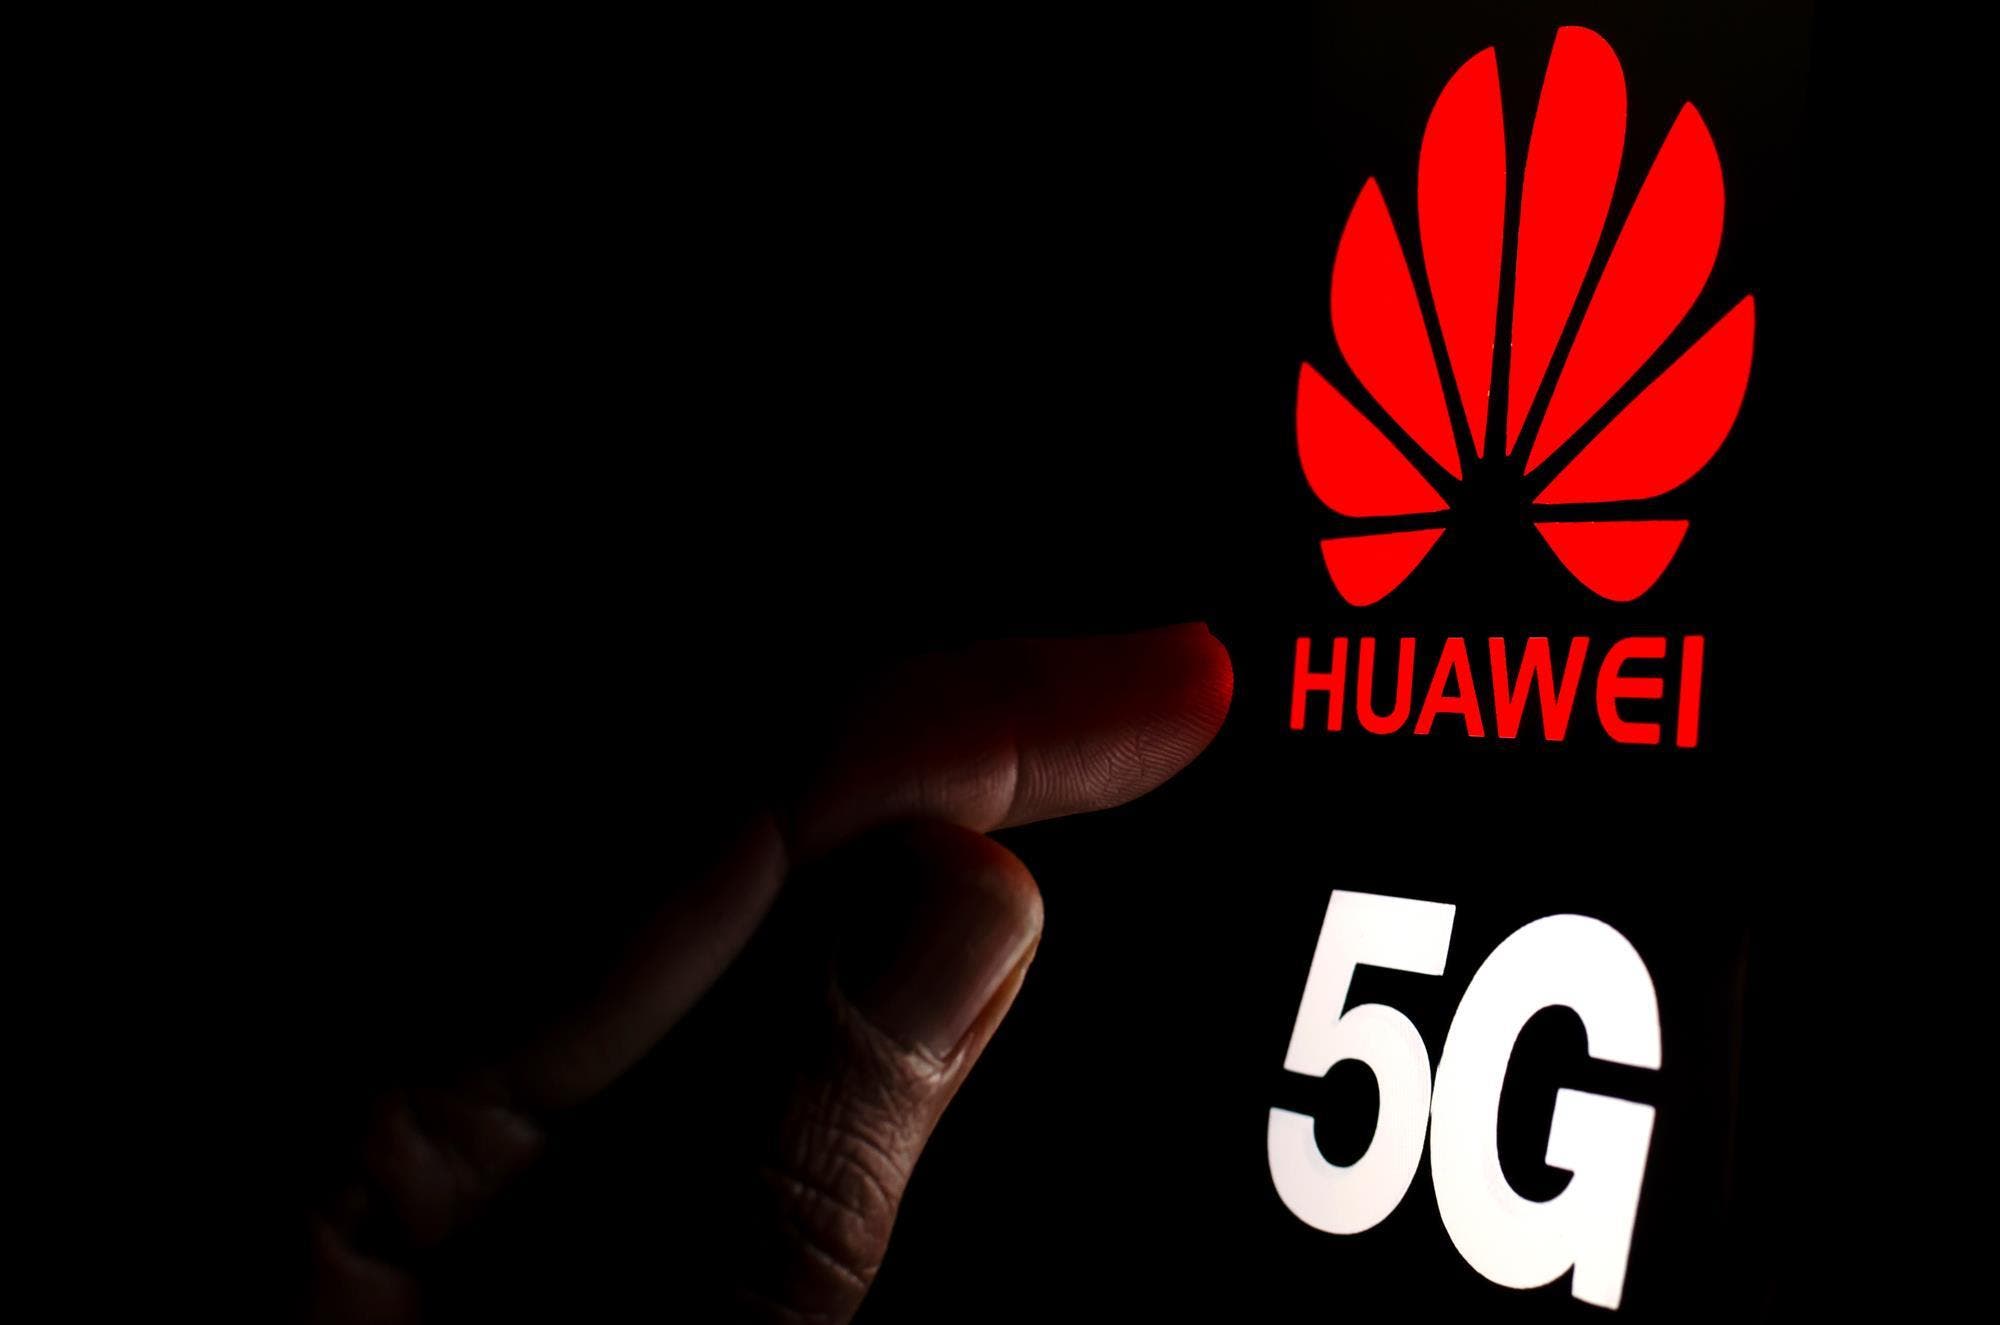 Huawei 5G cellular